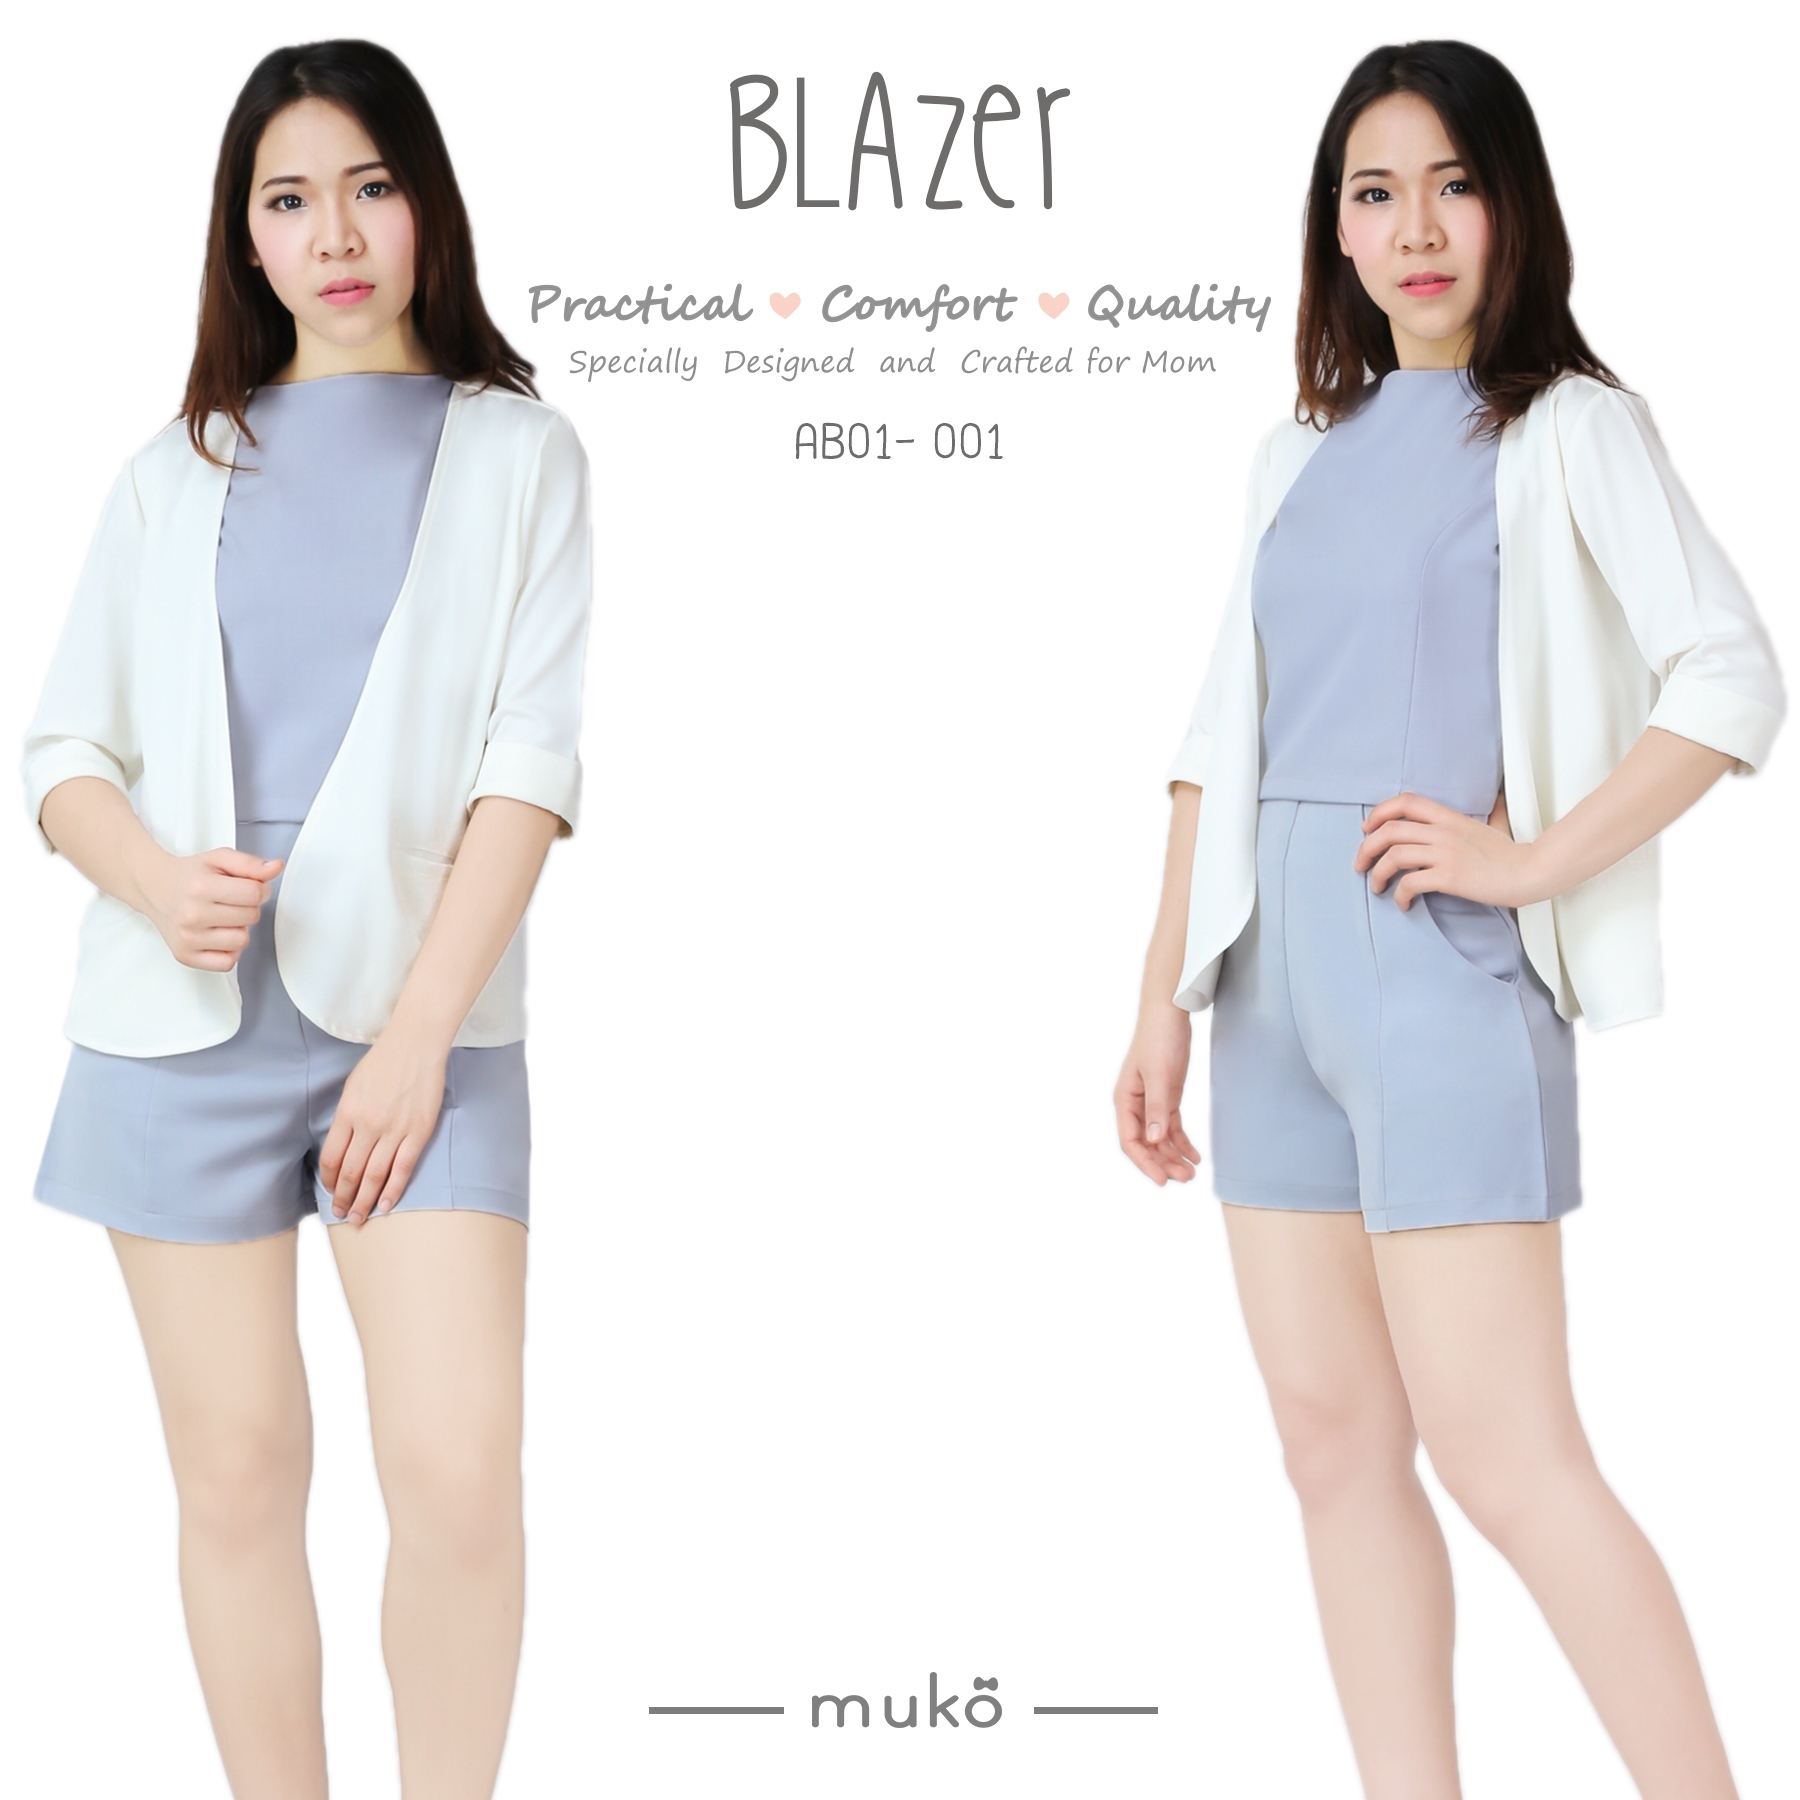 Muko Blazer เสื้อคลุมผ้าฮานาโกะ AB01-001 สีขาว